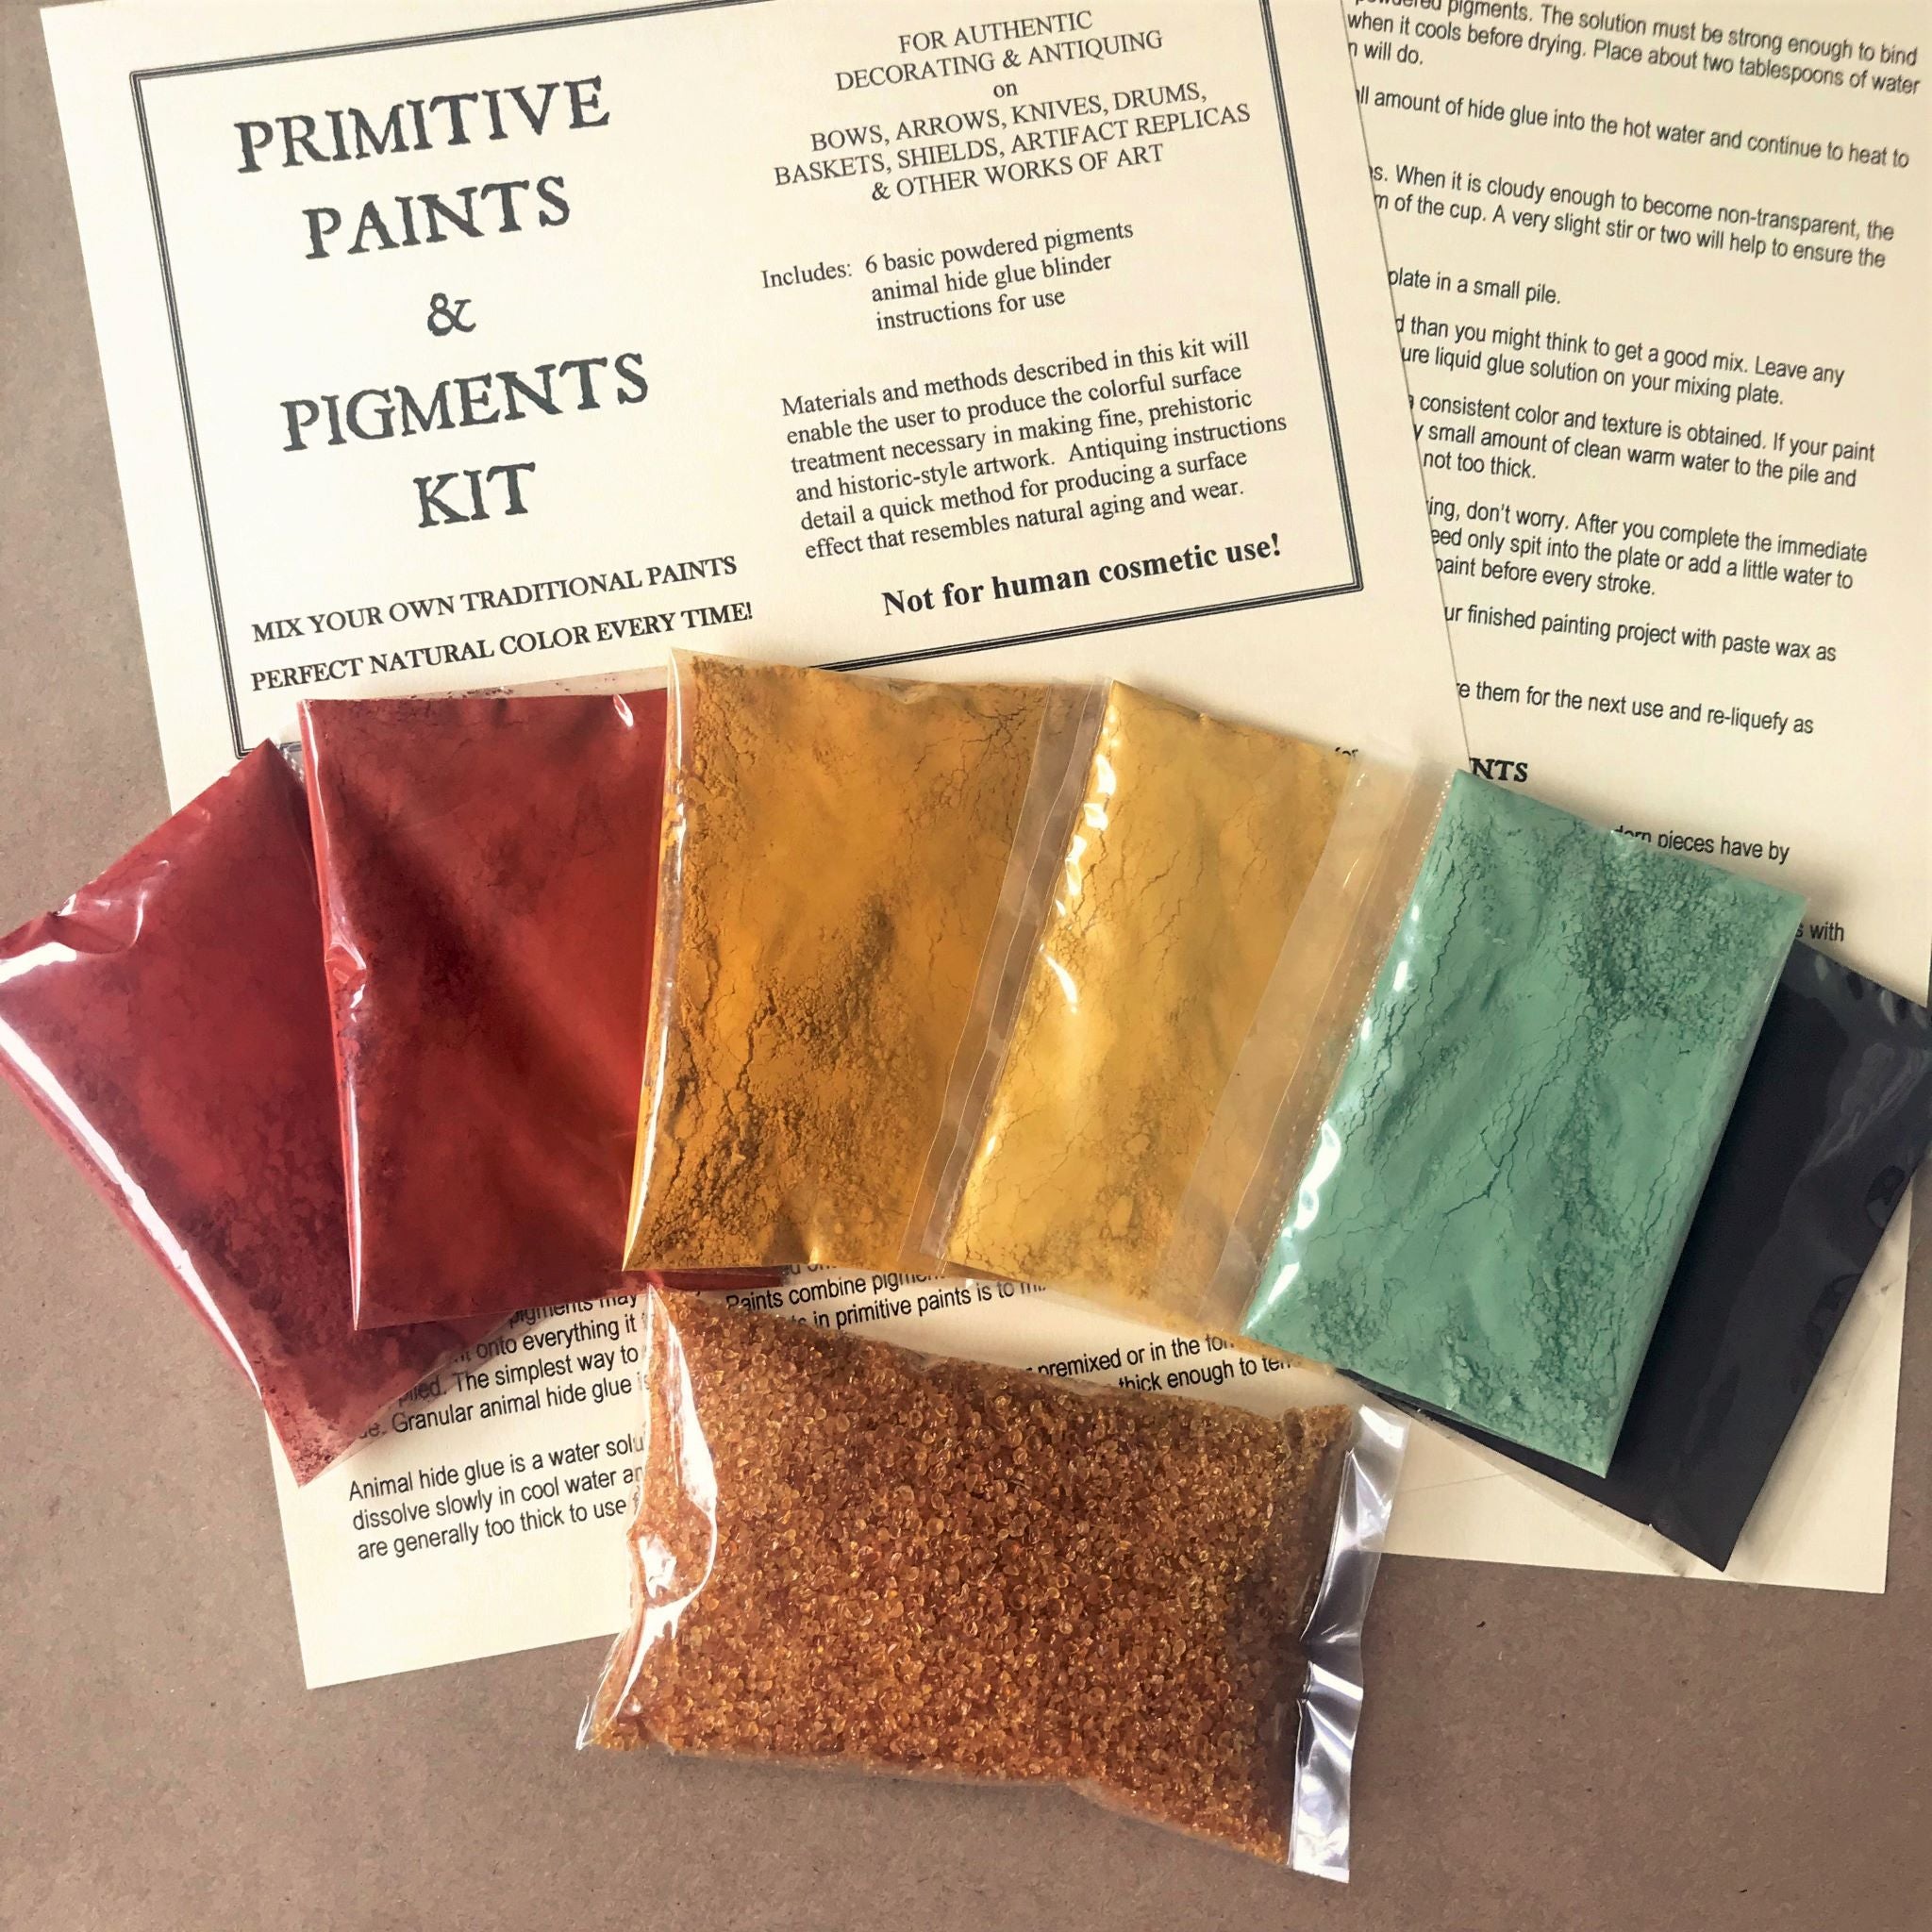 Primitive Paints & Pigments Kit: 6 powdered pigments, hide glue, instructions & label 